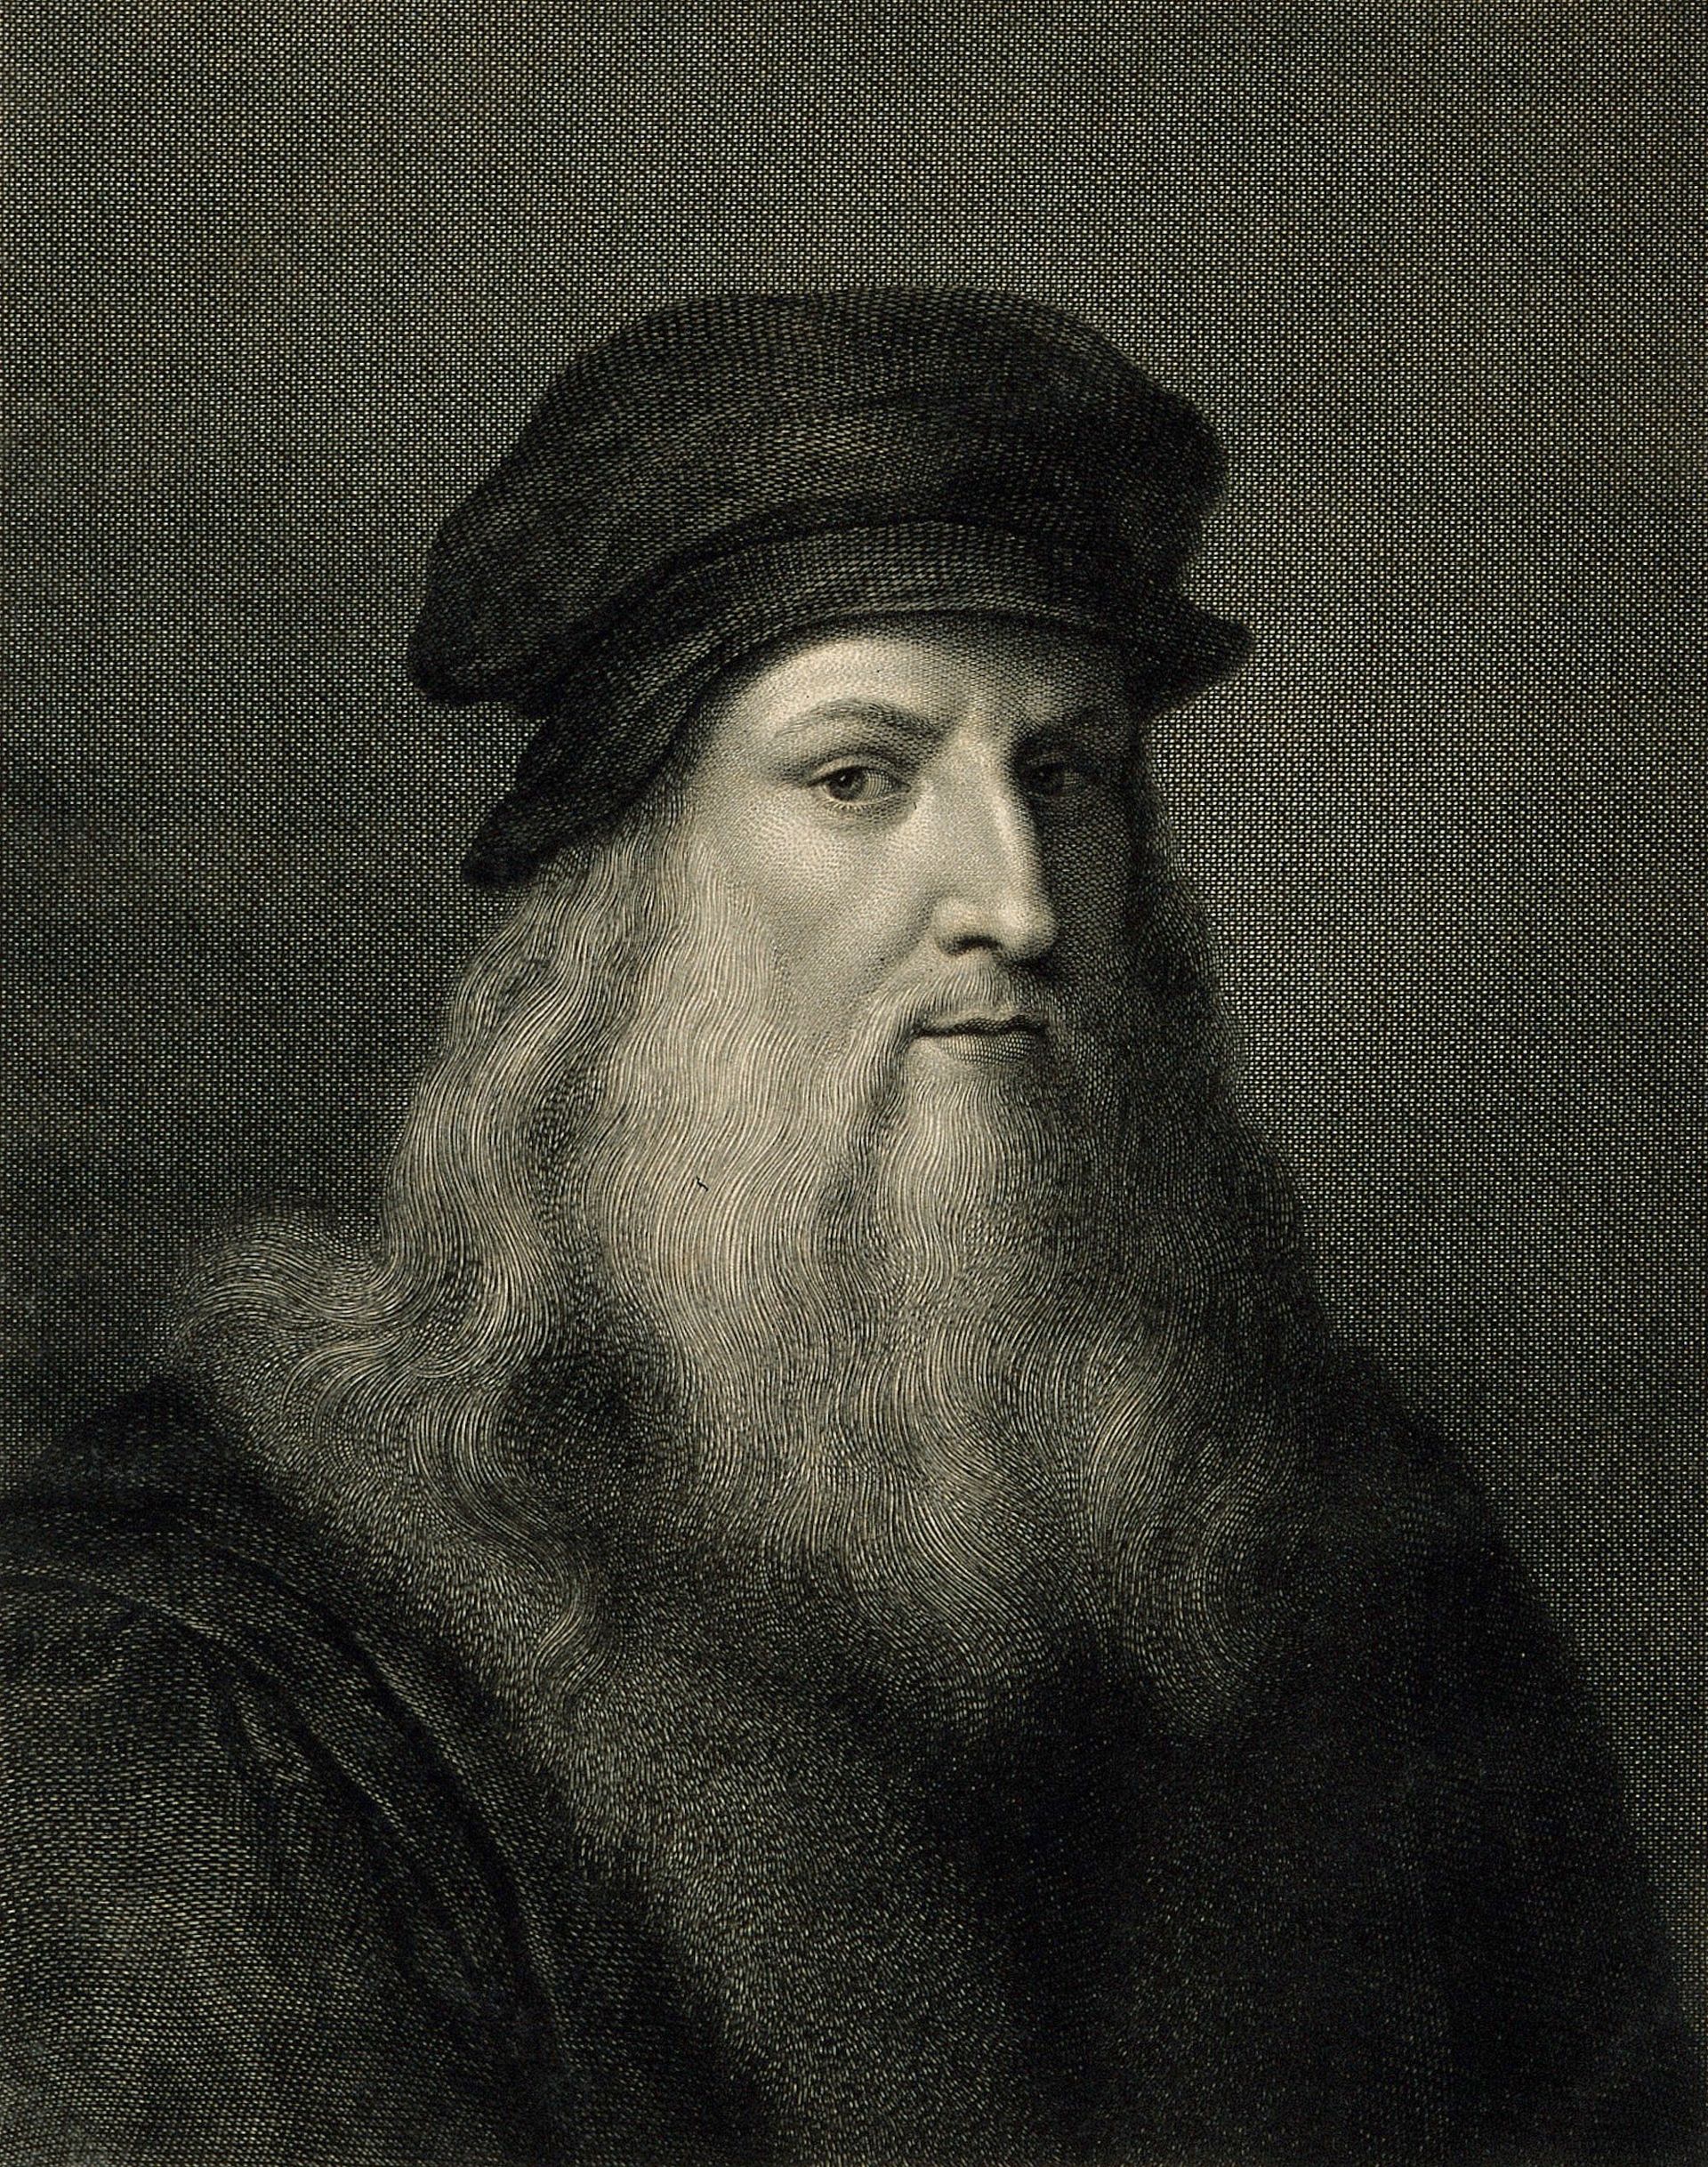 Raffaello Sanzio Morghen portrait of Leonardo da Vinci Wellcome Collection, via Wikimedia Commons